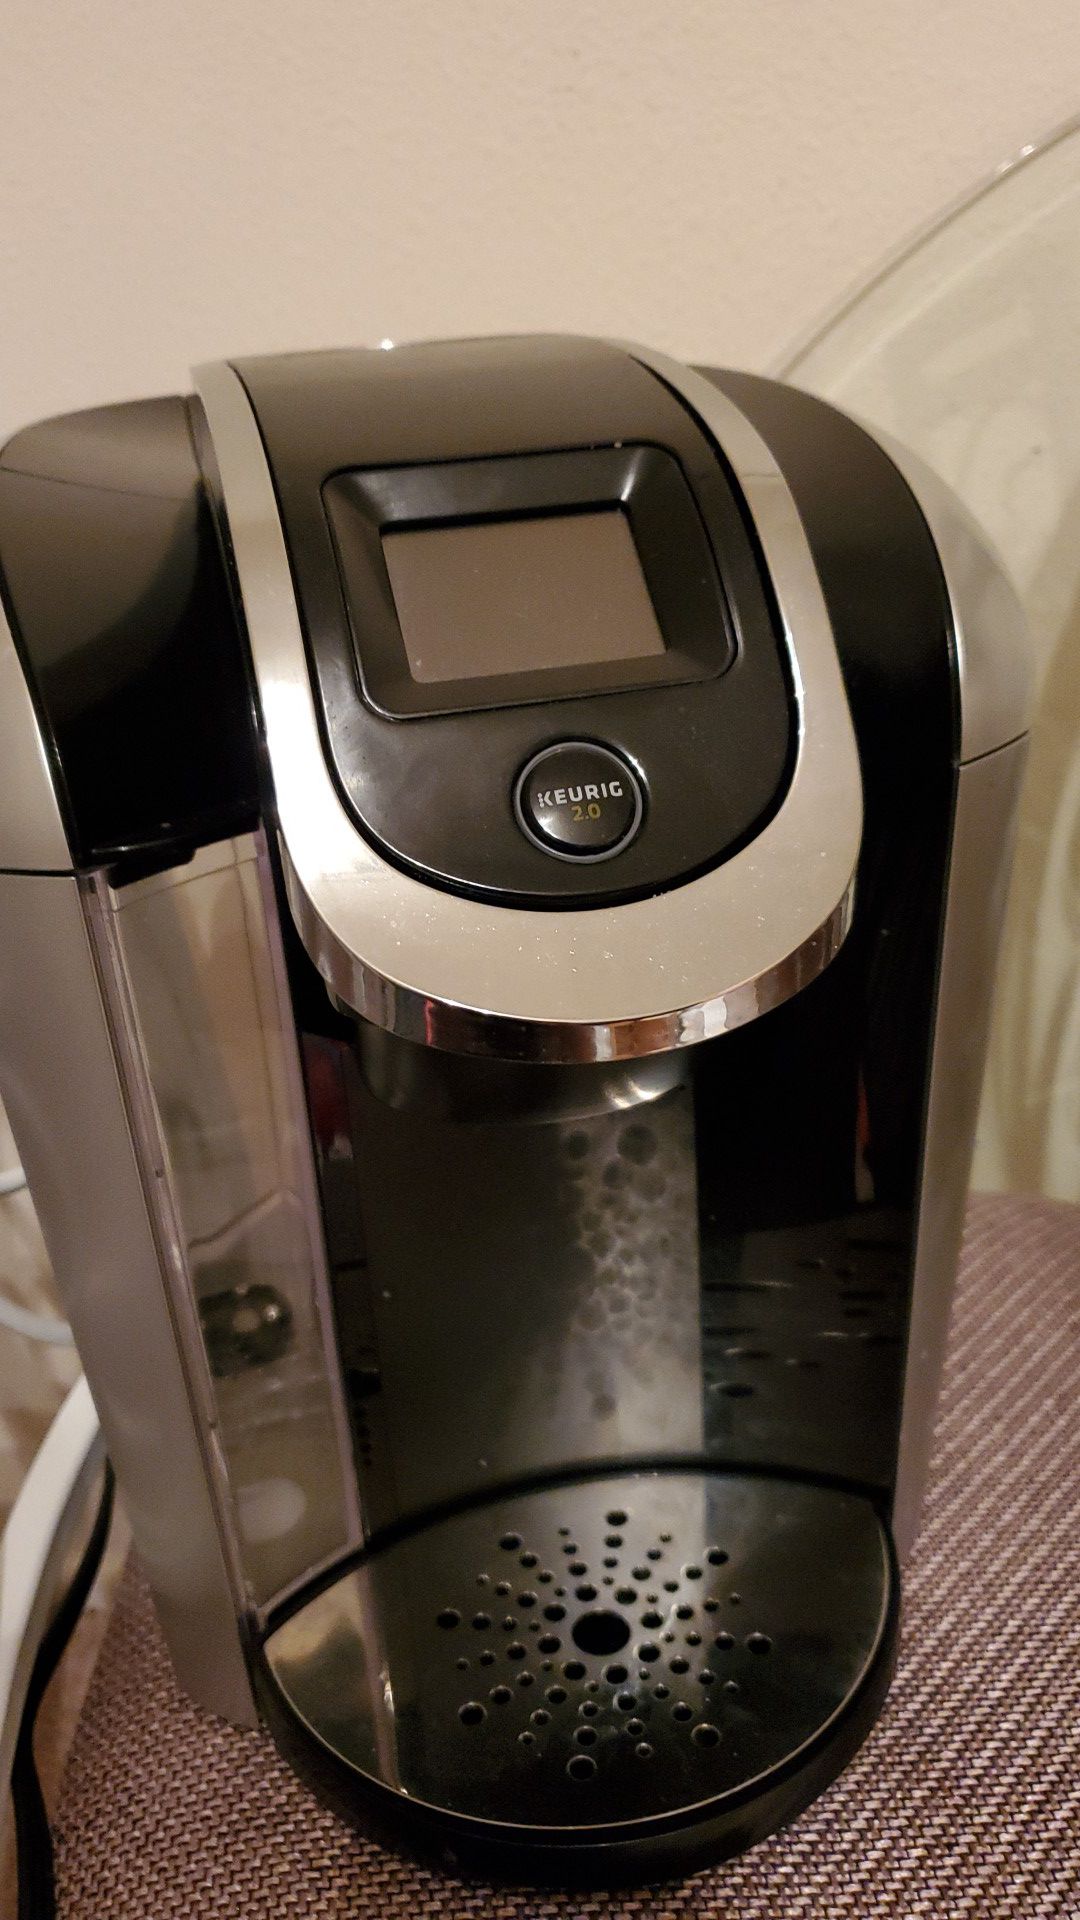 Keuring 2.0 coffee maker